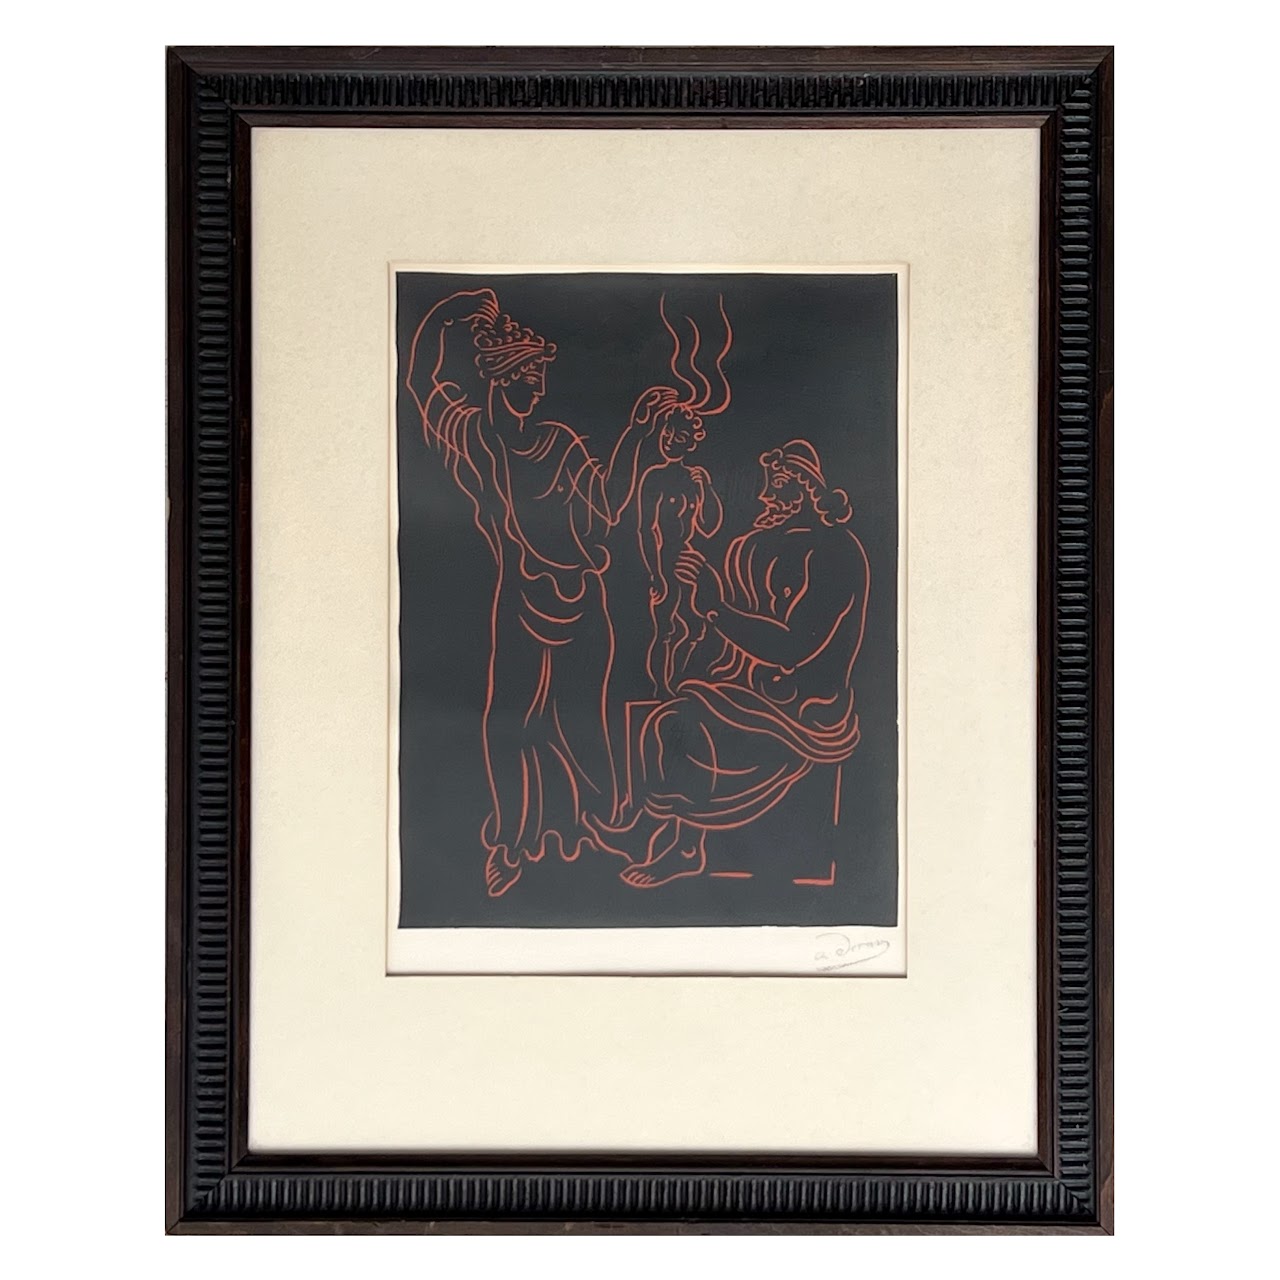 André Derain 'L'Enfant' Collector's Guild Wood Engraving